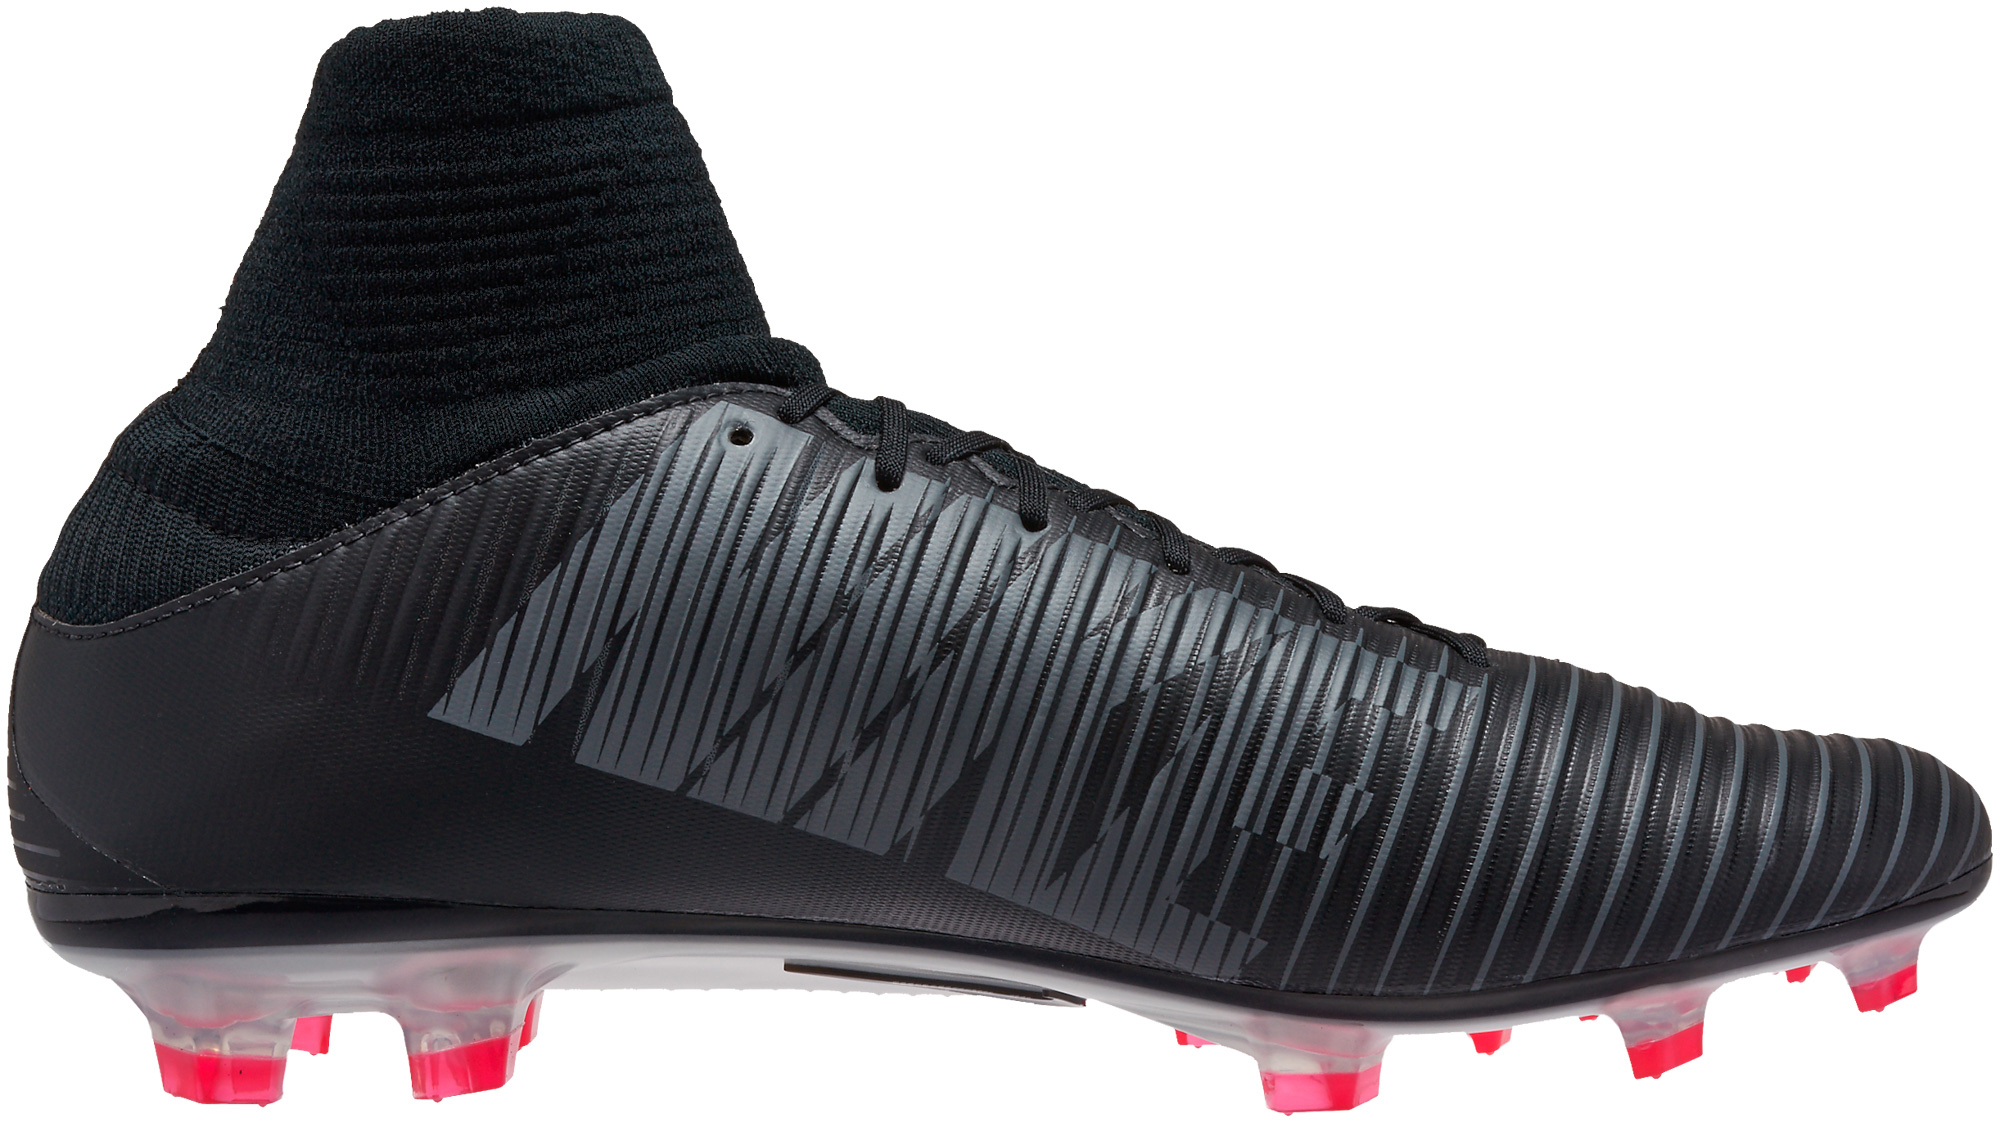 Alboroto Tan rápido como un flash Guarda la ropa Nike Mercurial Veloce III DF FG Soccer Cleats Black and White- SoccerPro.com